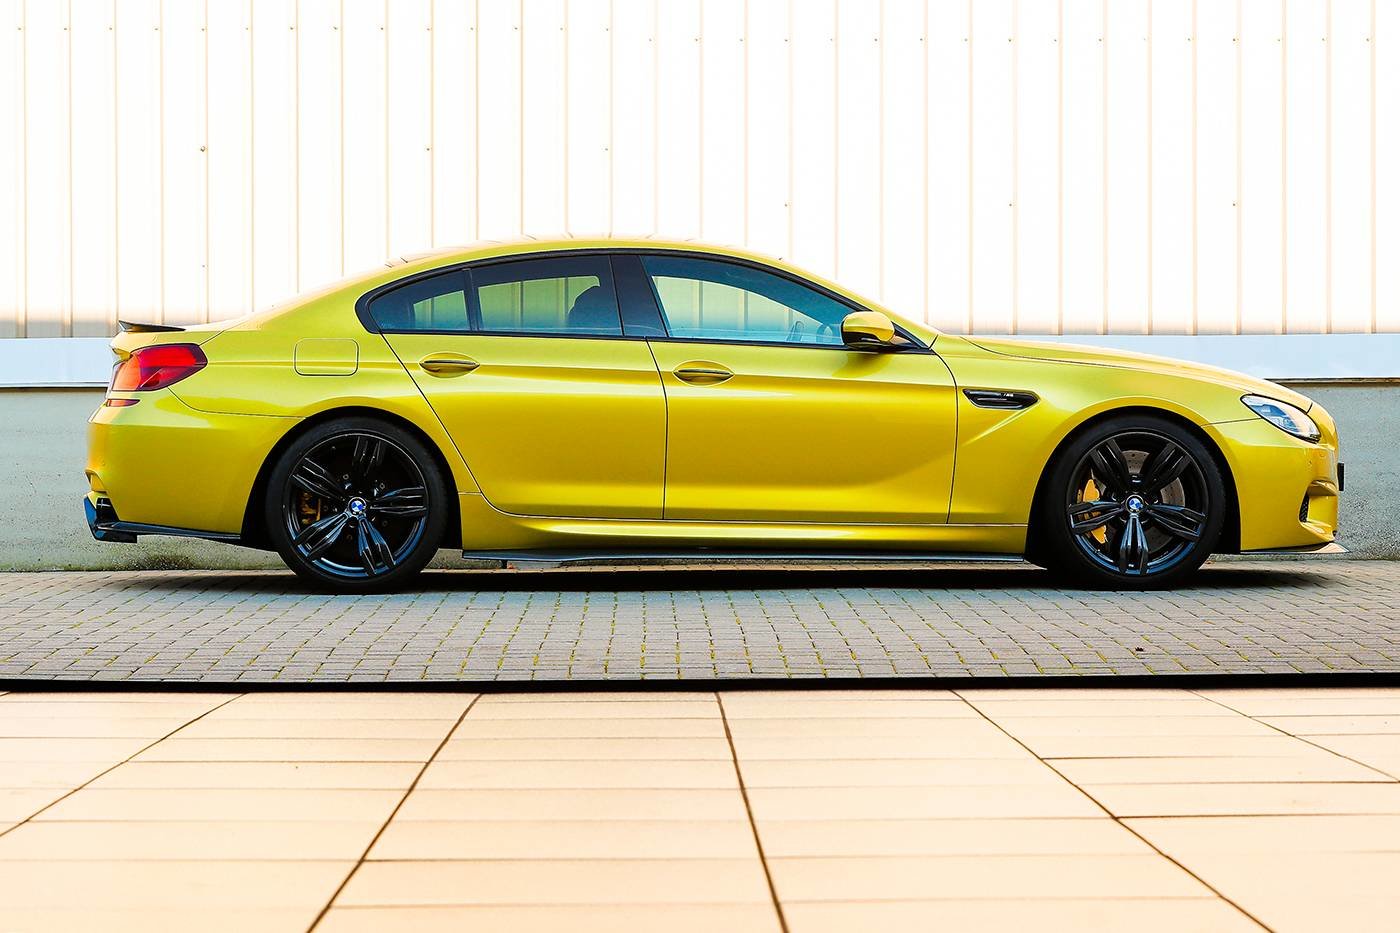 3DDesign Carbon Seitenschweller für BMW F06 M6 - online kaufen bei CFD